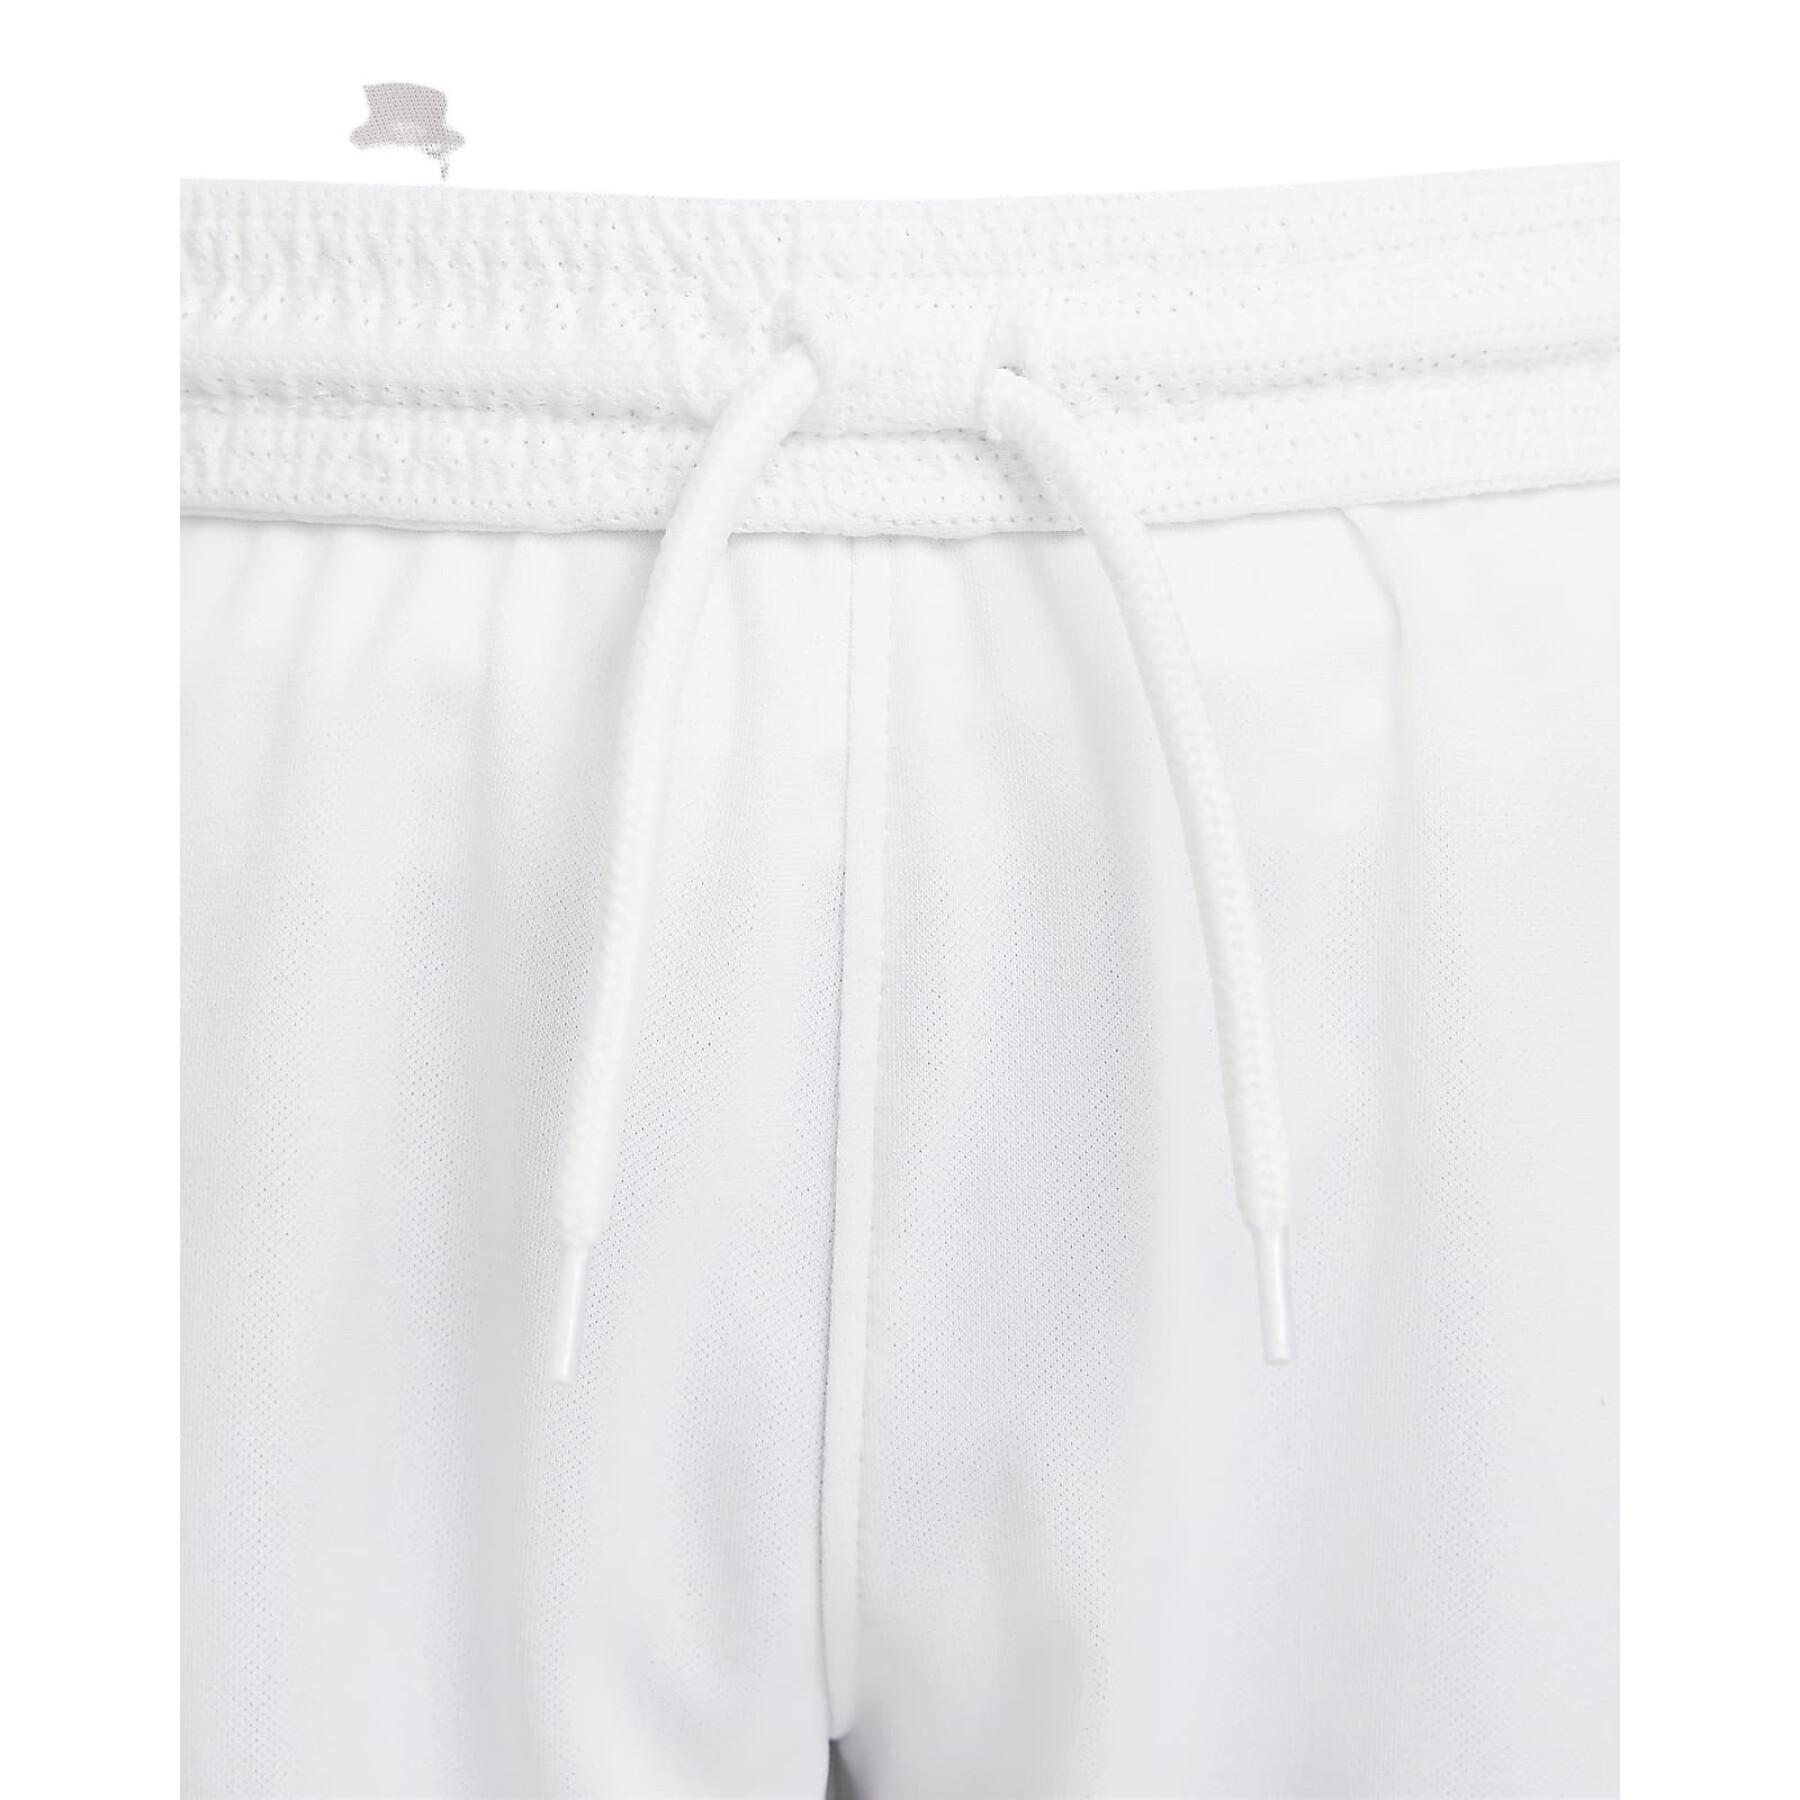 Pantalones cortos para niños cuarto PSG 2021/22